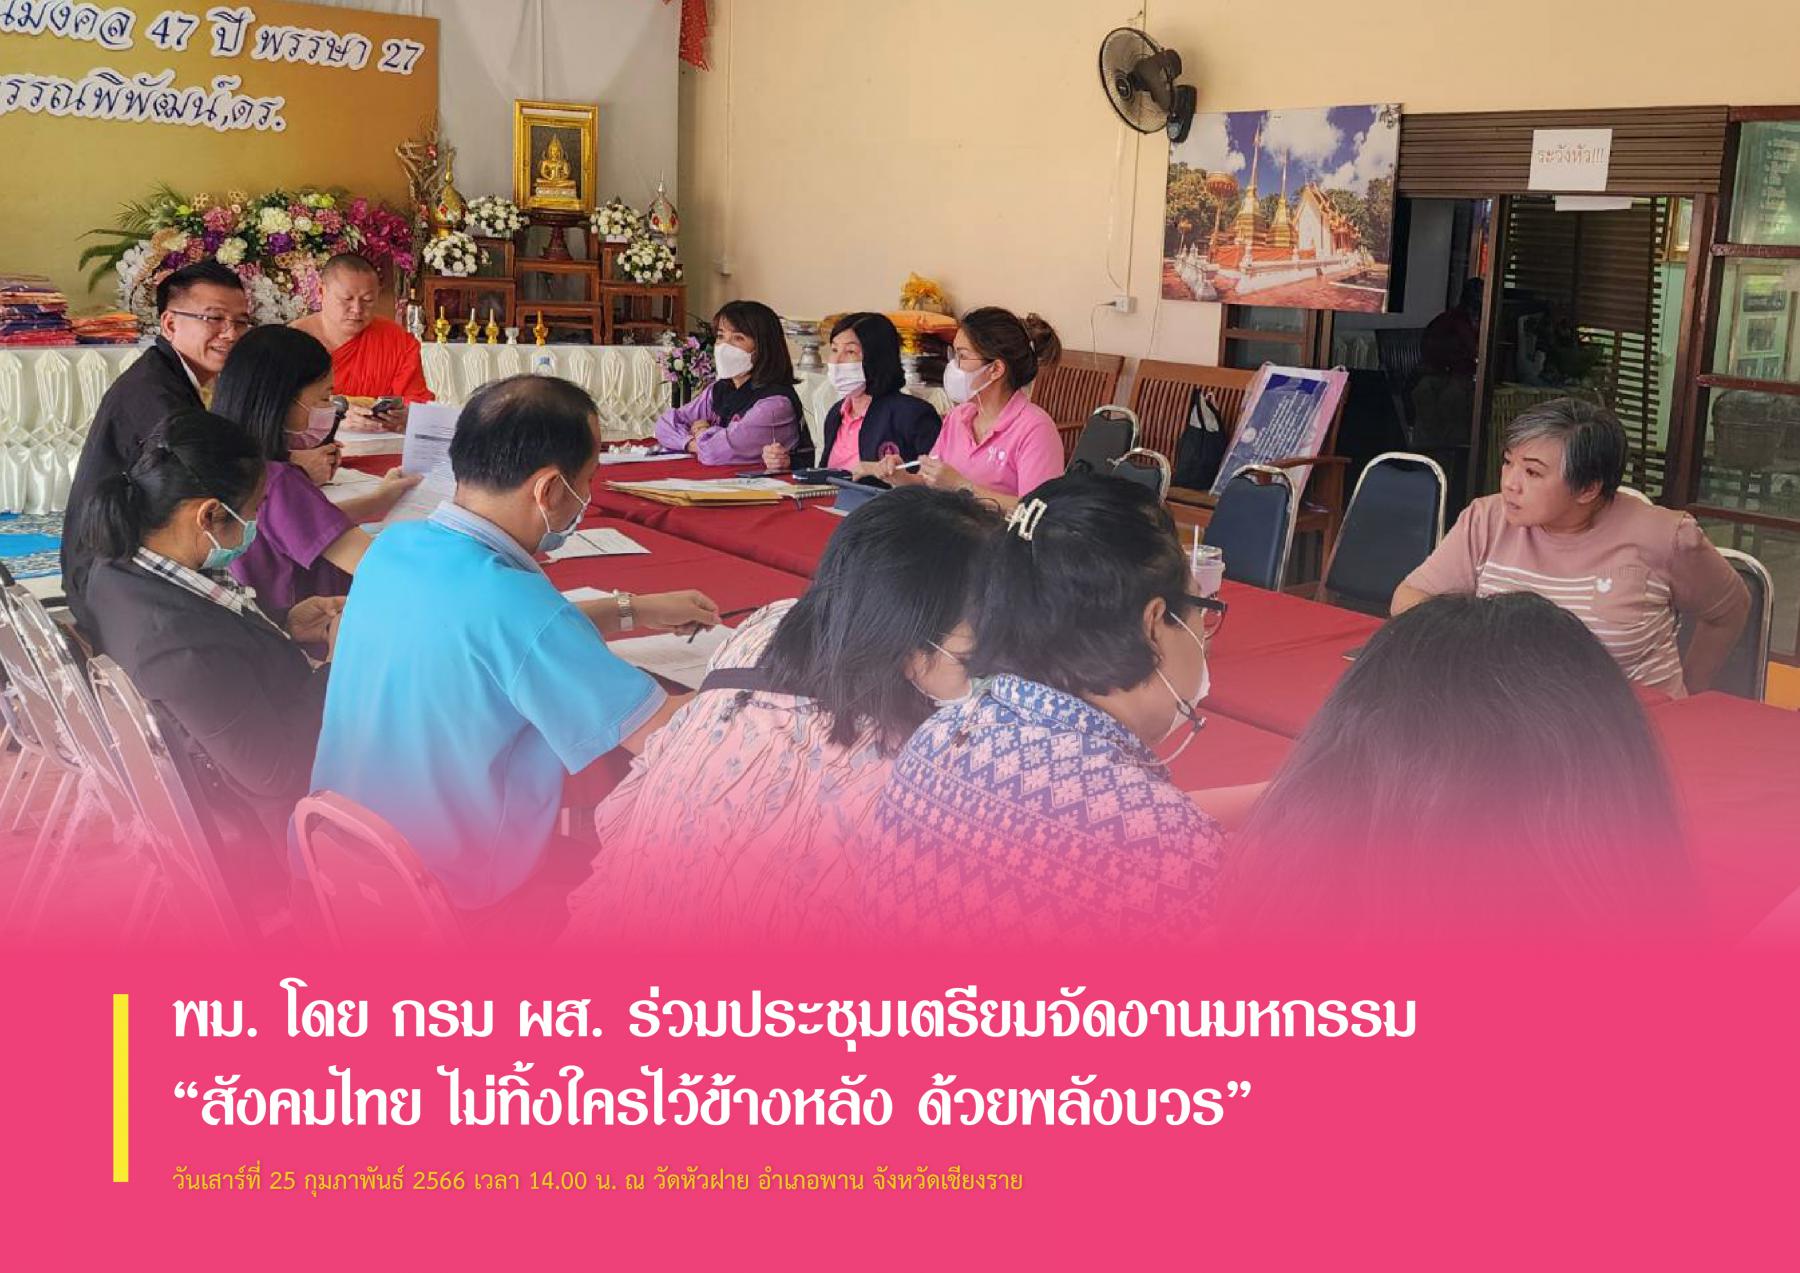 พม. โดย กรม ผส. ร่วมประชุมเตรียมจัดงานมหกรรม “สังคมไทย ไม่ทิ้งใครไว้ข้างหลัง ด้วยพลังบวร”